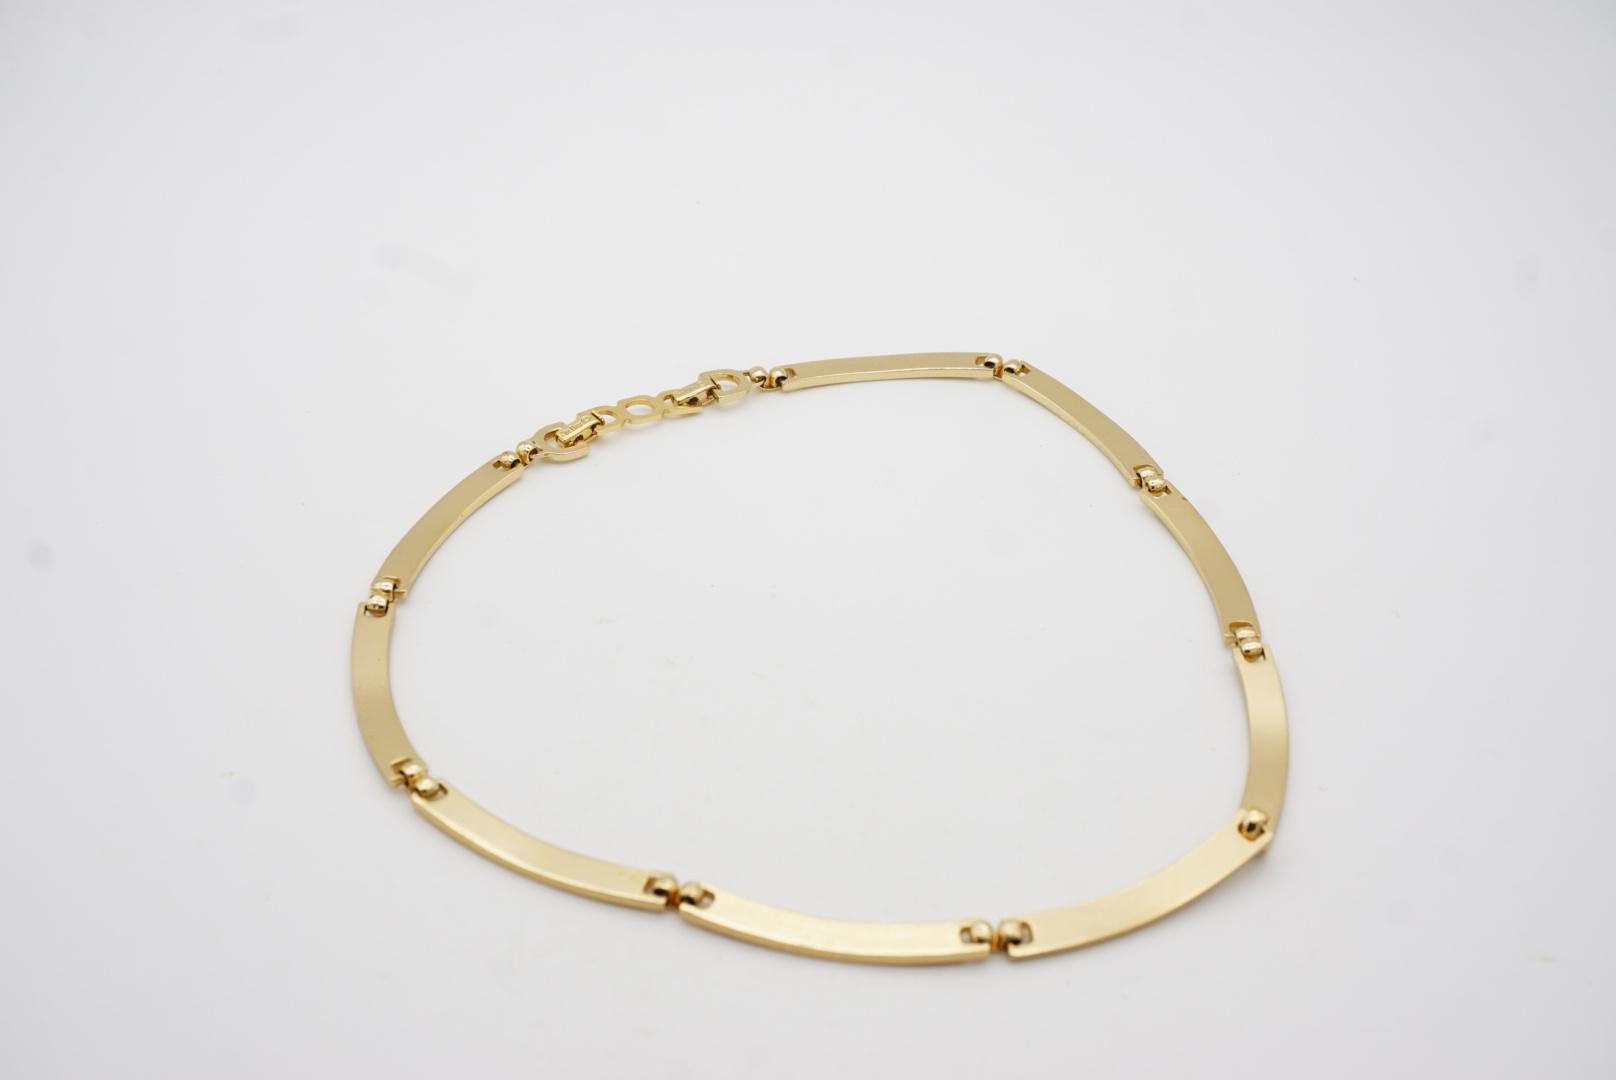 Christian Dior Vintage 1980s Unisex Crystals Interlink Choker Necklace Bracelet For Sale 11